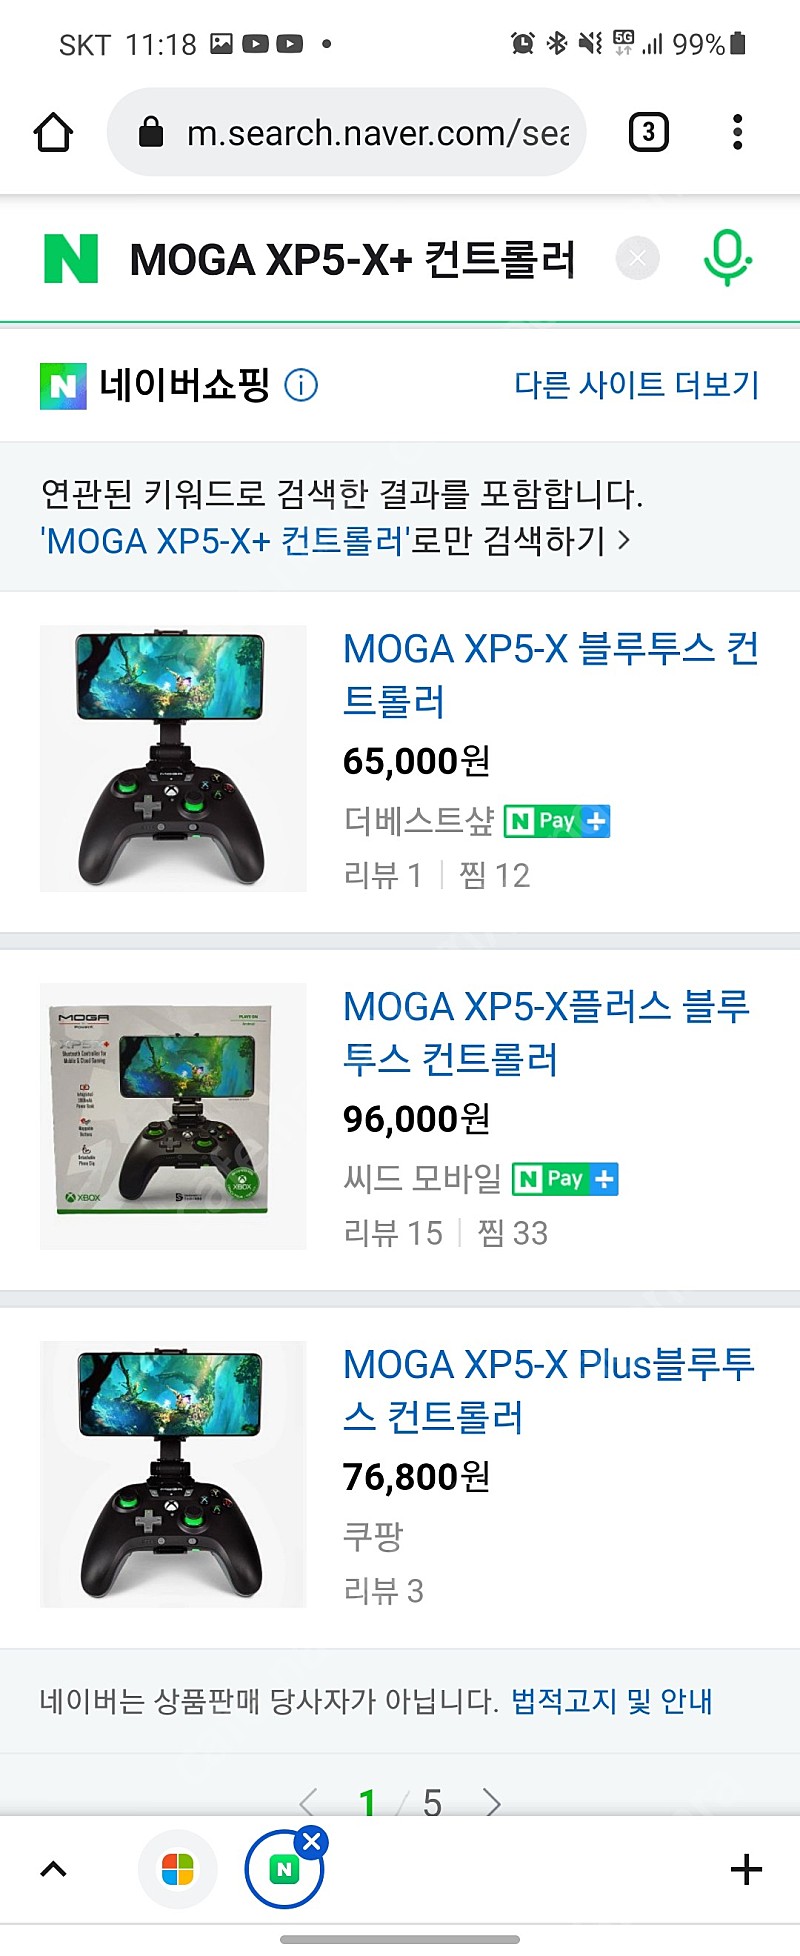 엑스박스 컨트롤러 -MOGA XP5-X+ 컨트롤러- 미개봉품